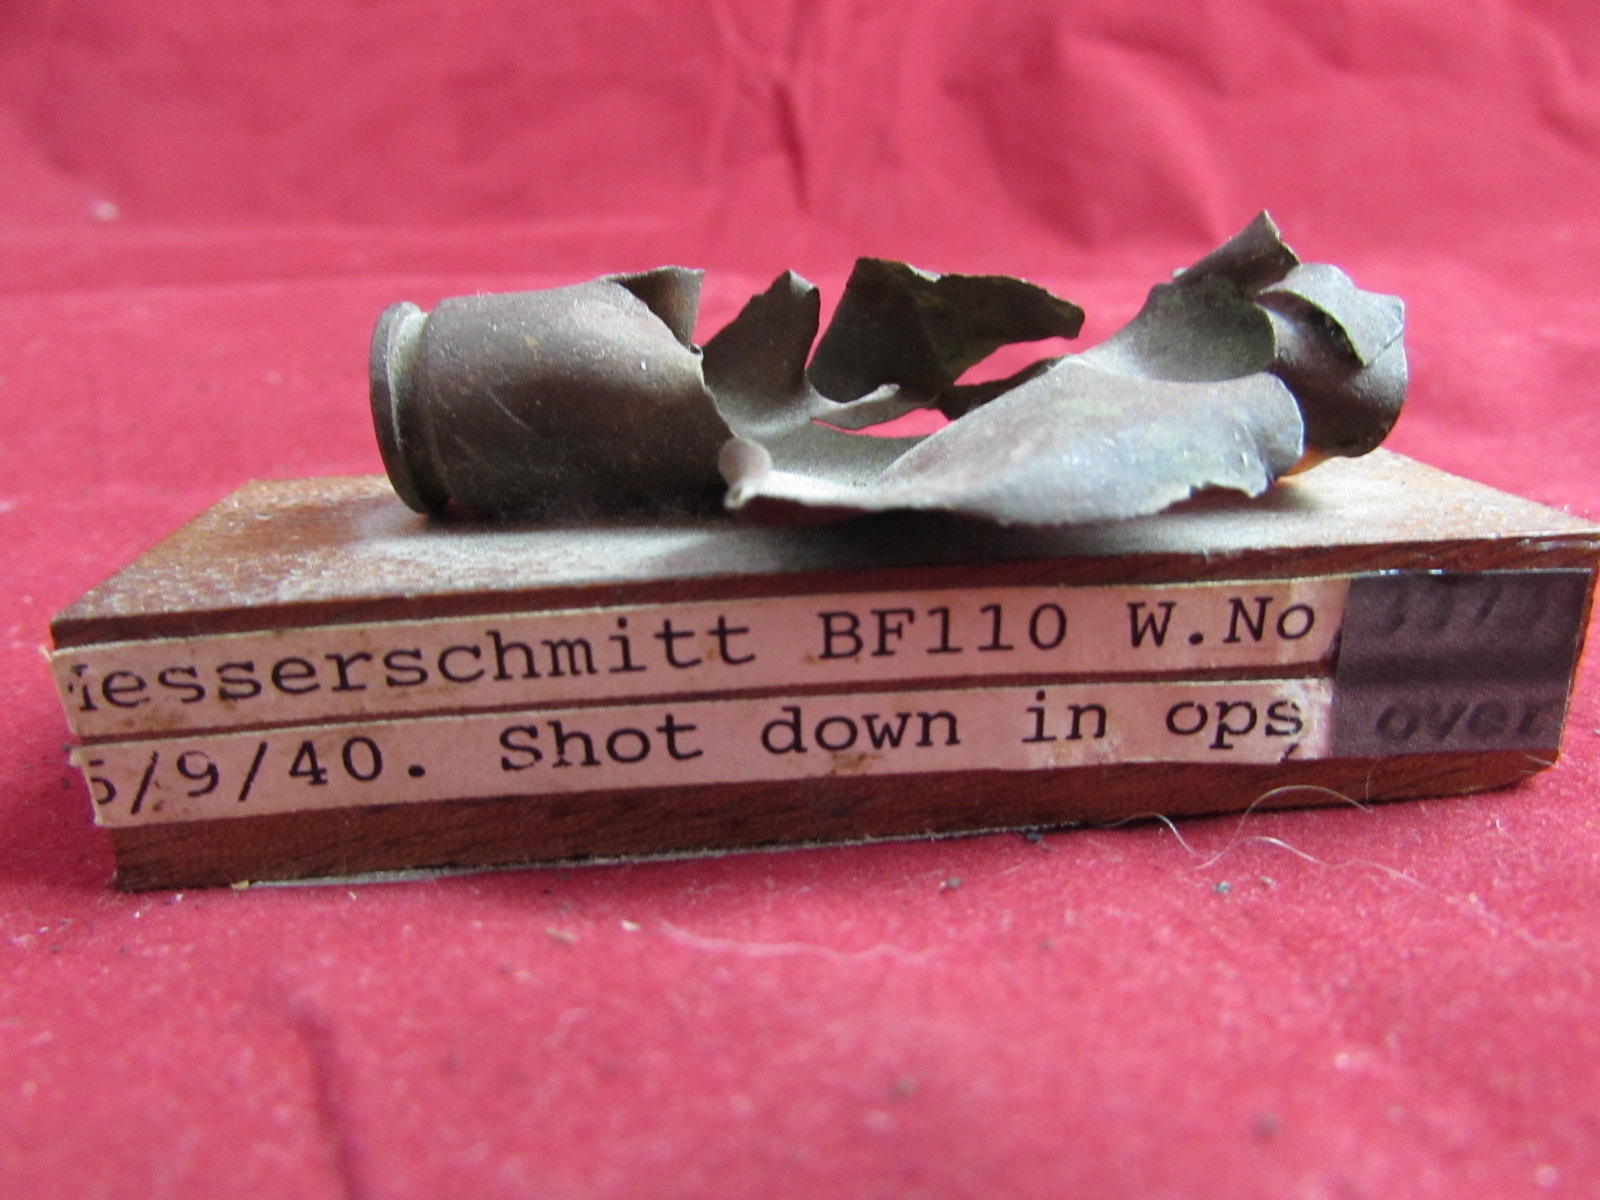 Messerschmitt Bf110 Bullet case 1940 mounted